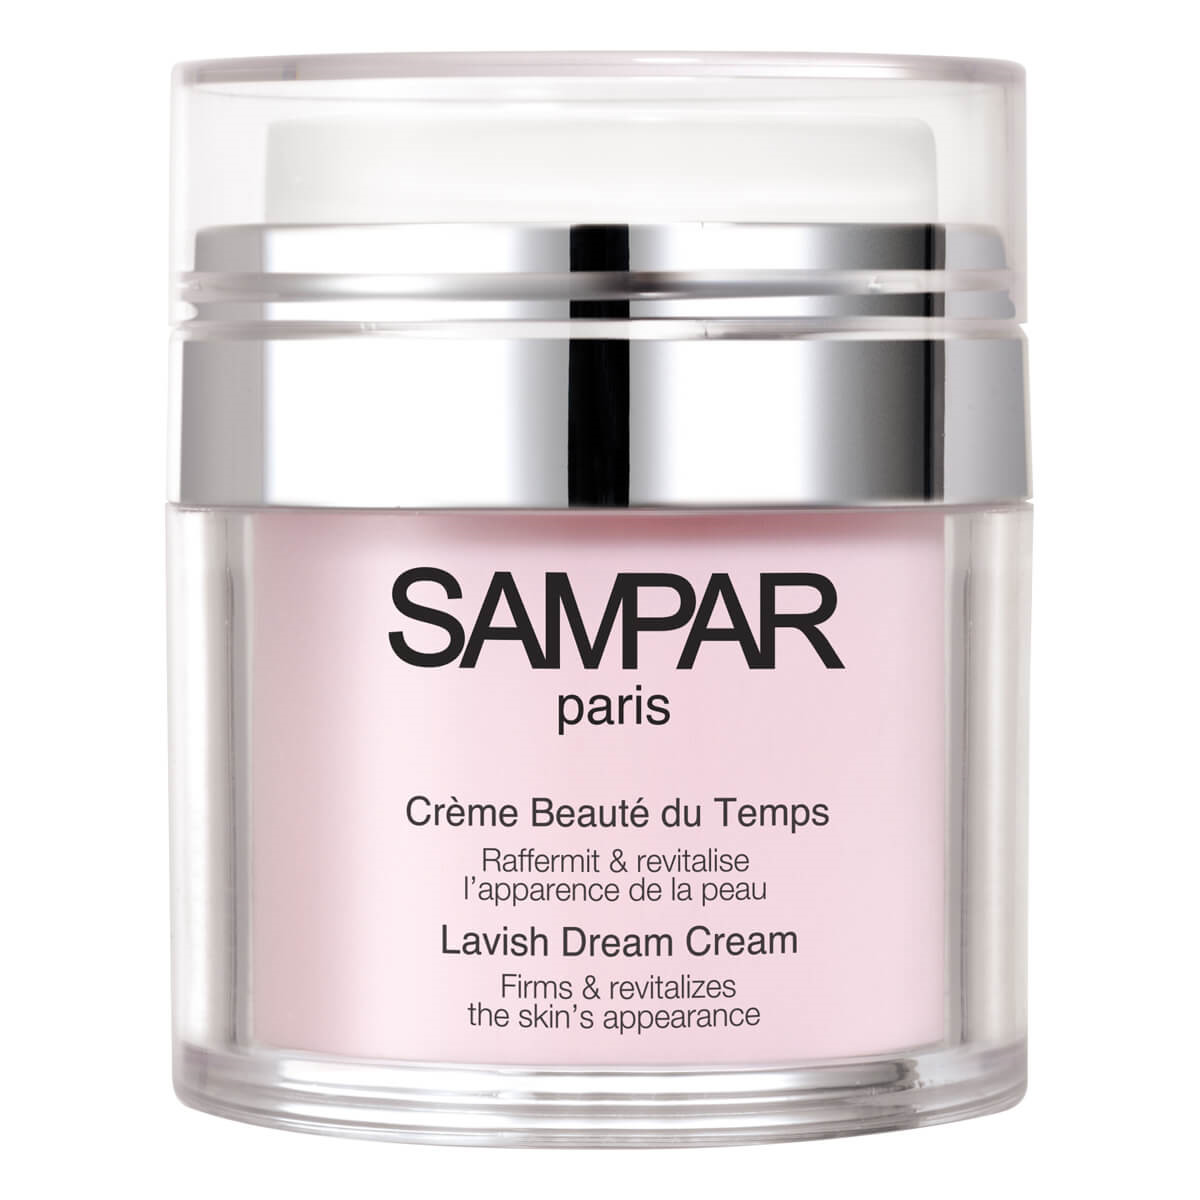 Billede af Sampar Lavish Dream Cream, 50 ml.